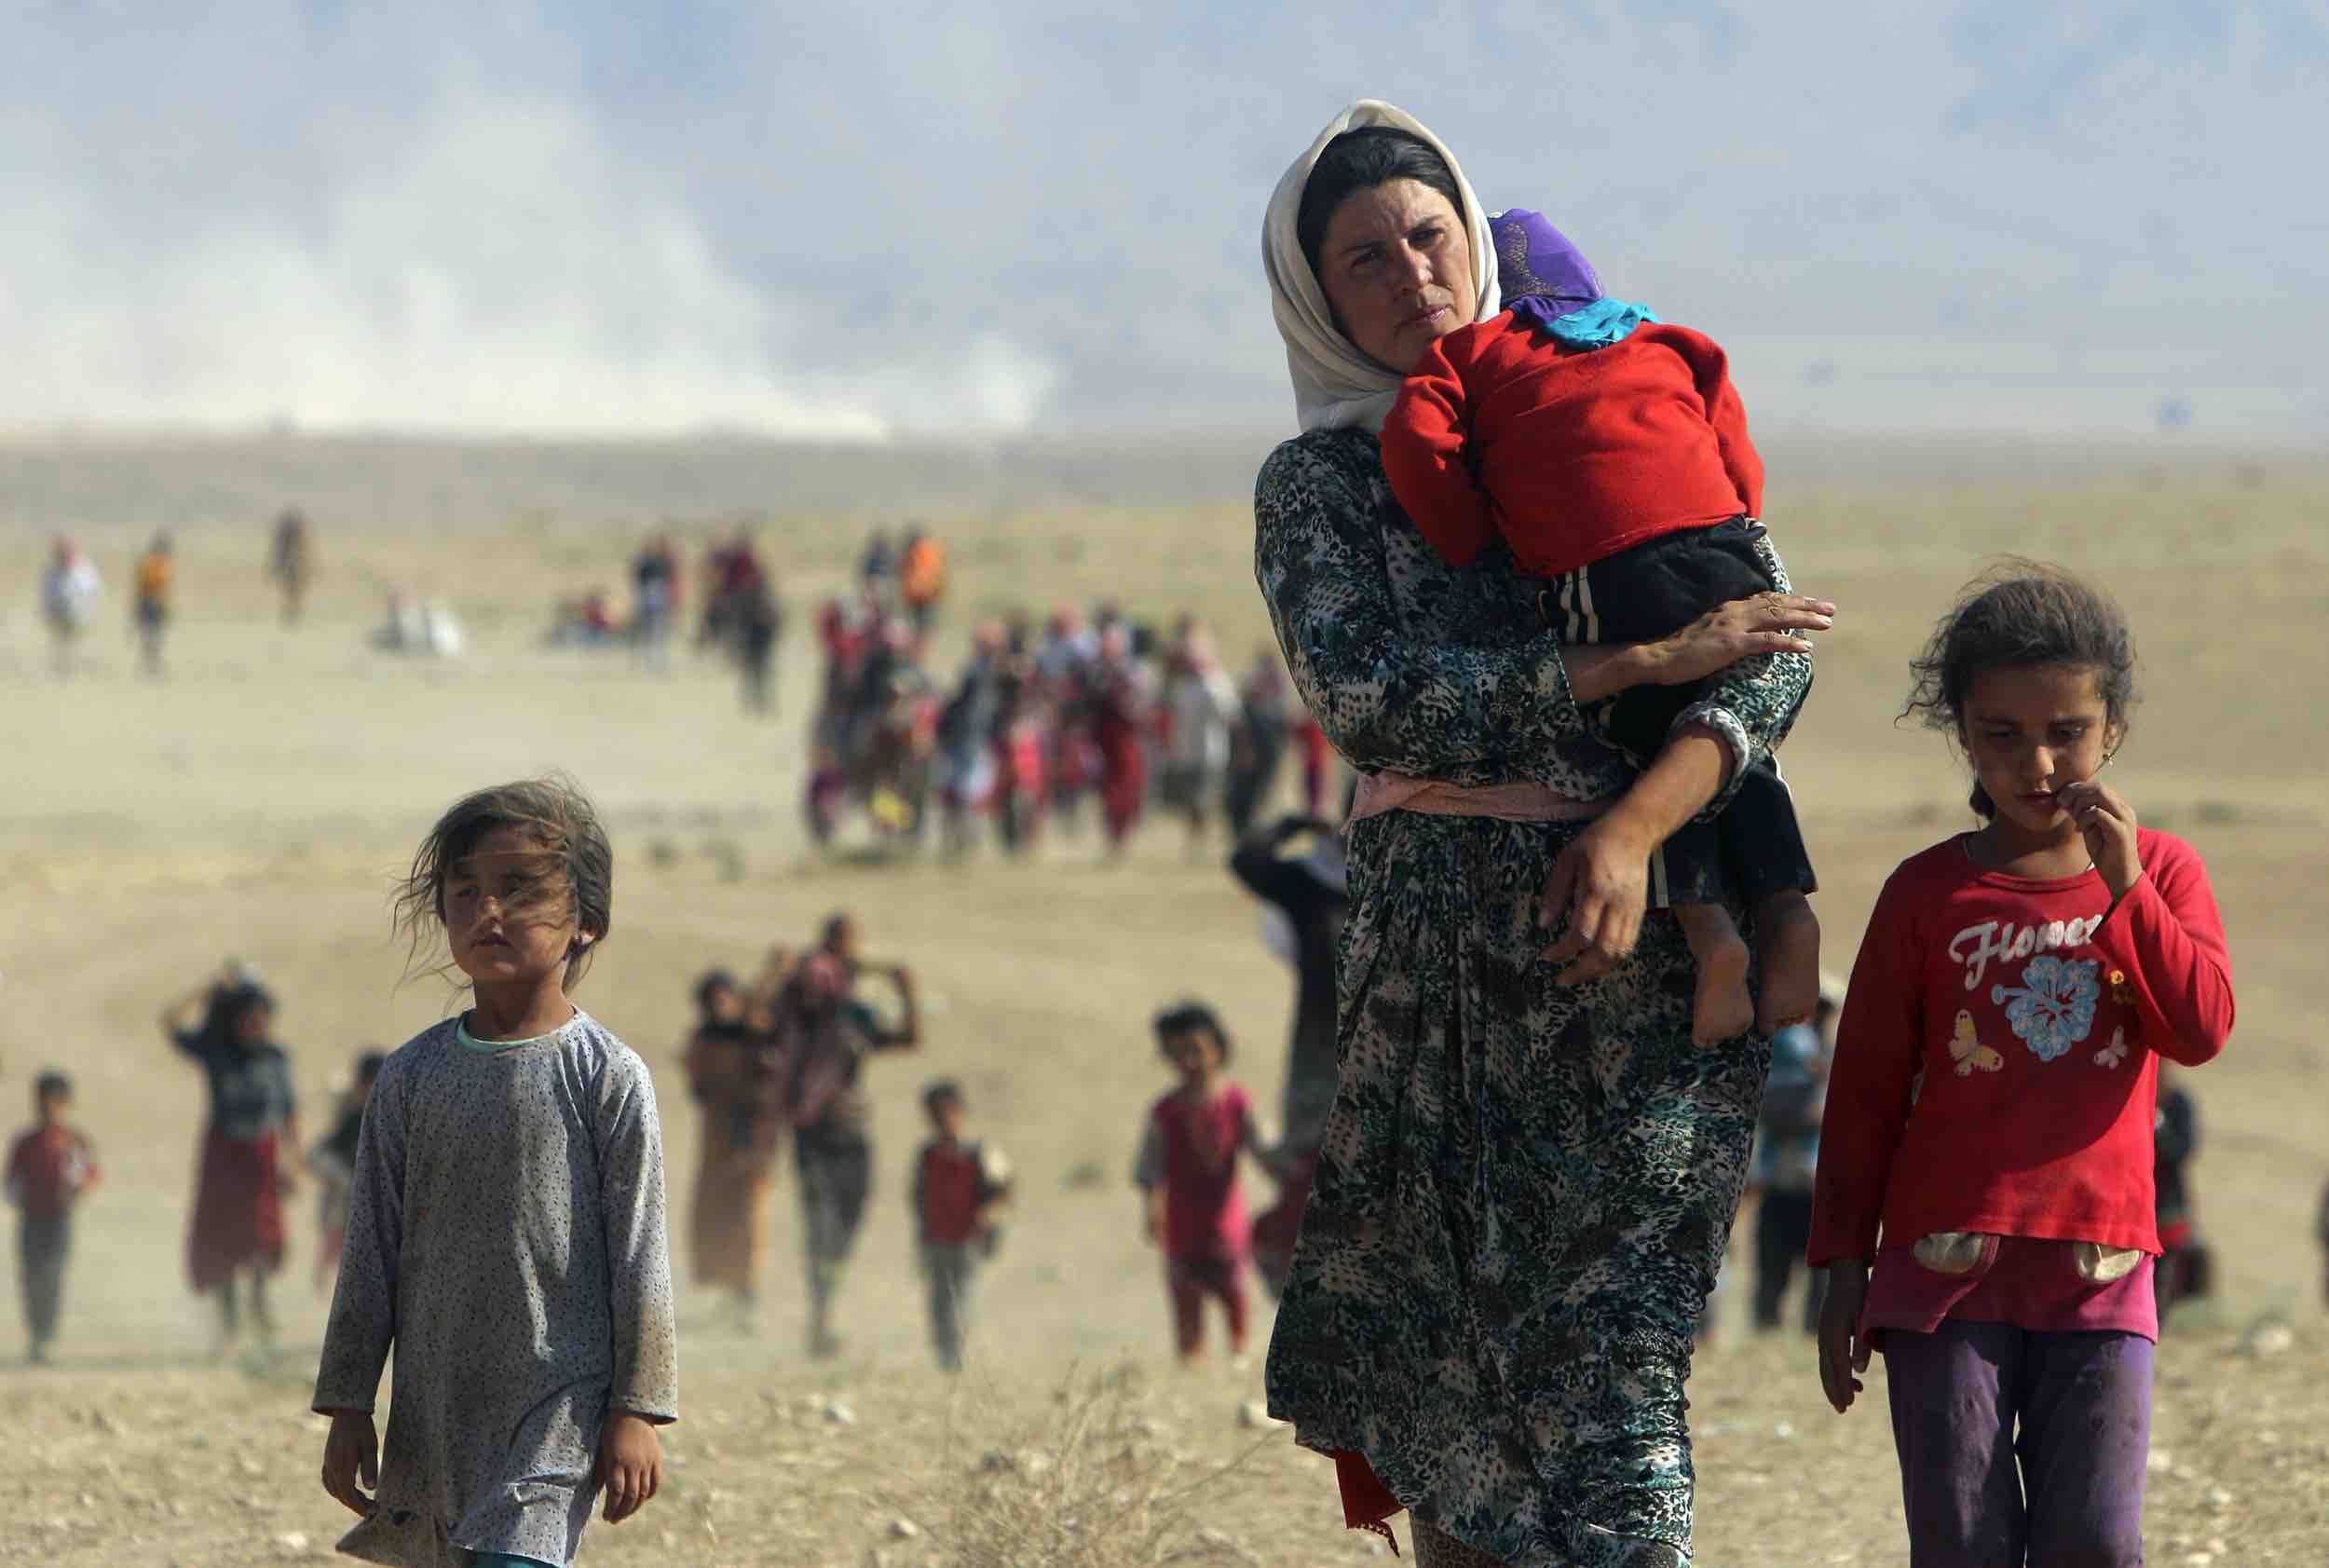 ازحون من الأقلية الدينية اليزيدية يهربون من عنف قوات موالية لداعش في مدينة سنجار بالعراق، 11 أغسطس\آب 2014. رويترز، رودي سعيد.